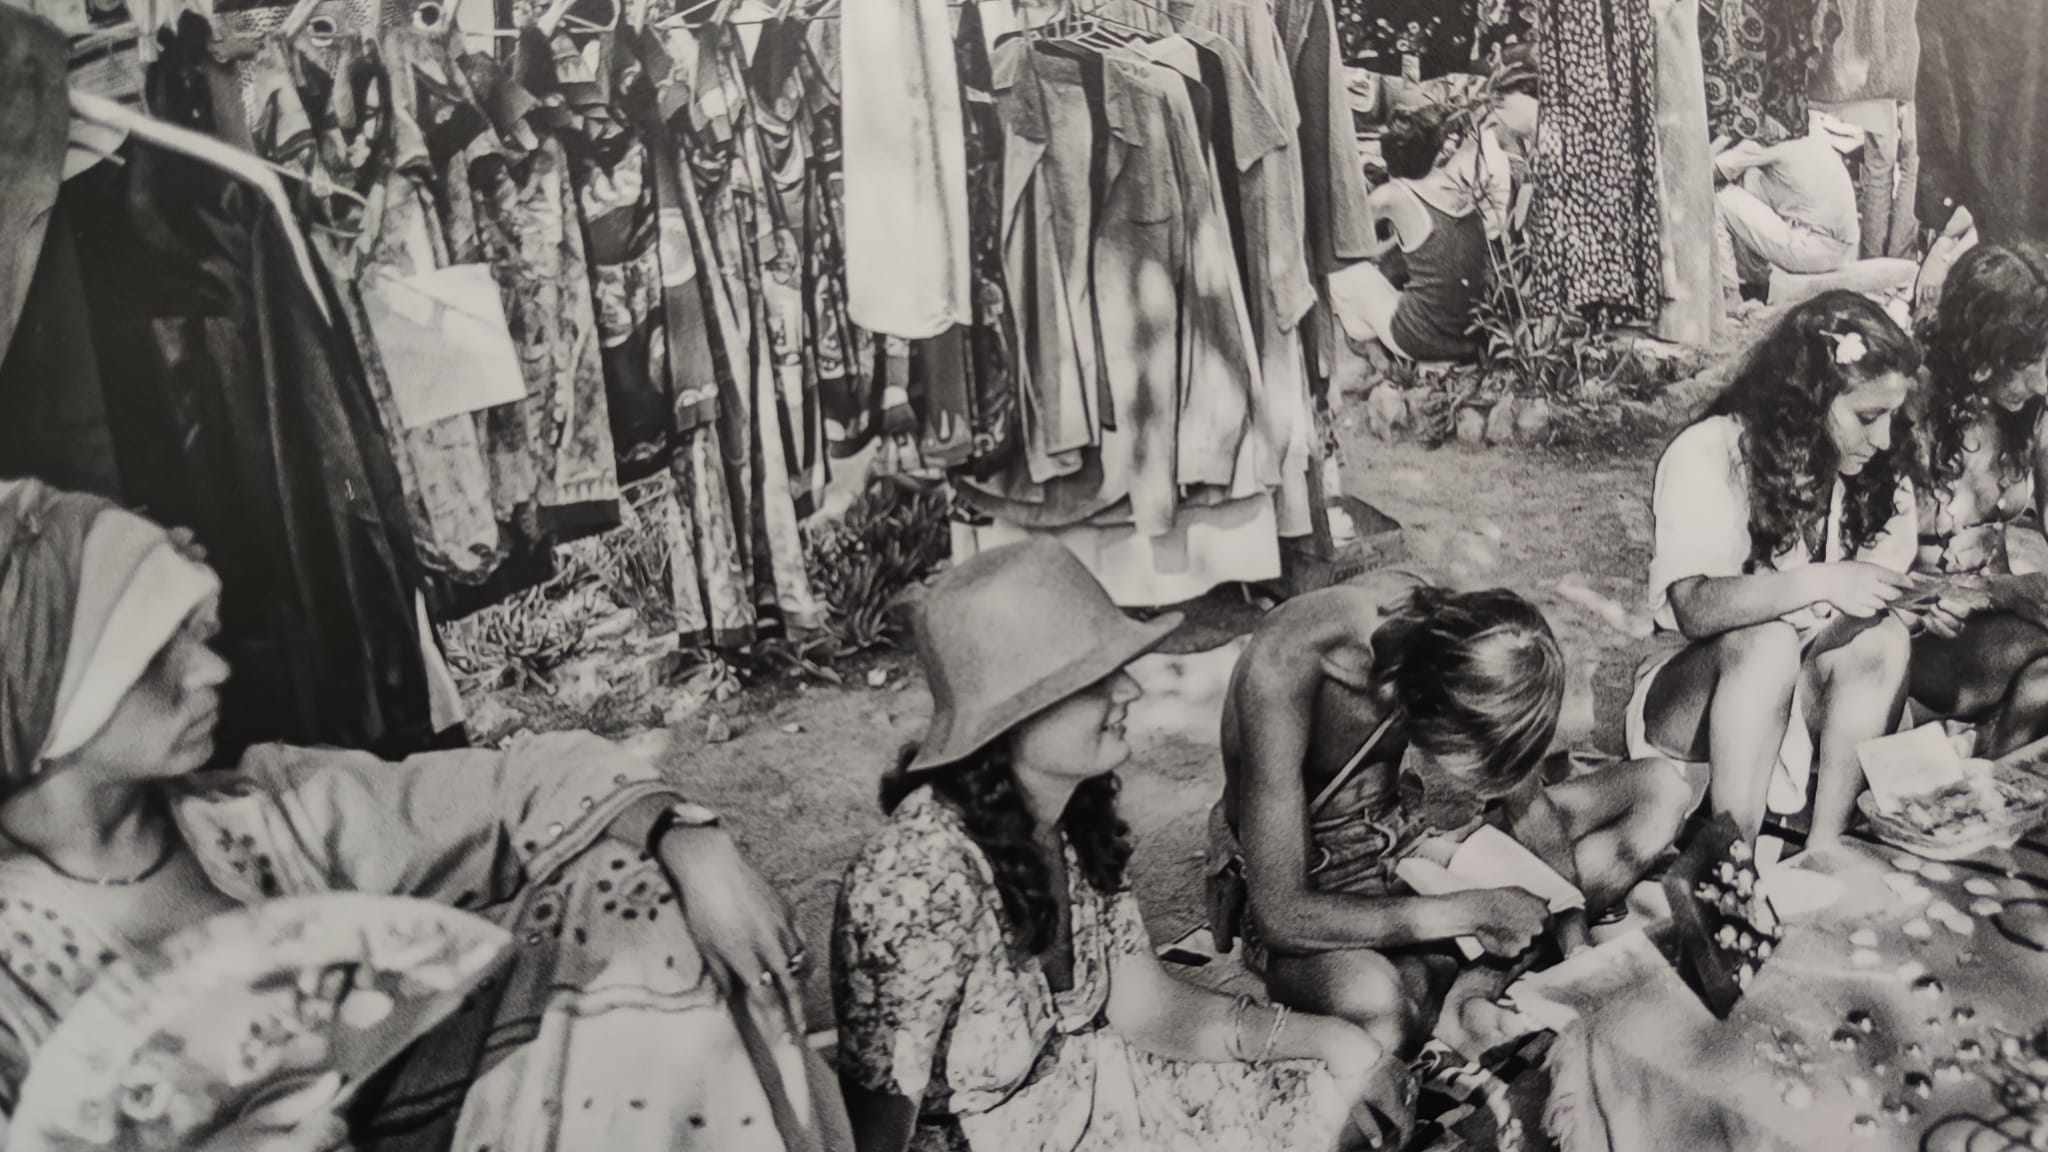 Pagesos i hippies d'Eivissa dels anys setanta, agrupats en una exposició del fotògraf Josep Soler